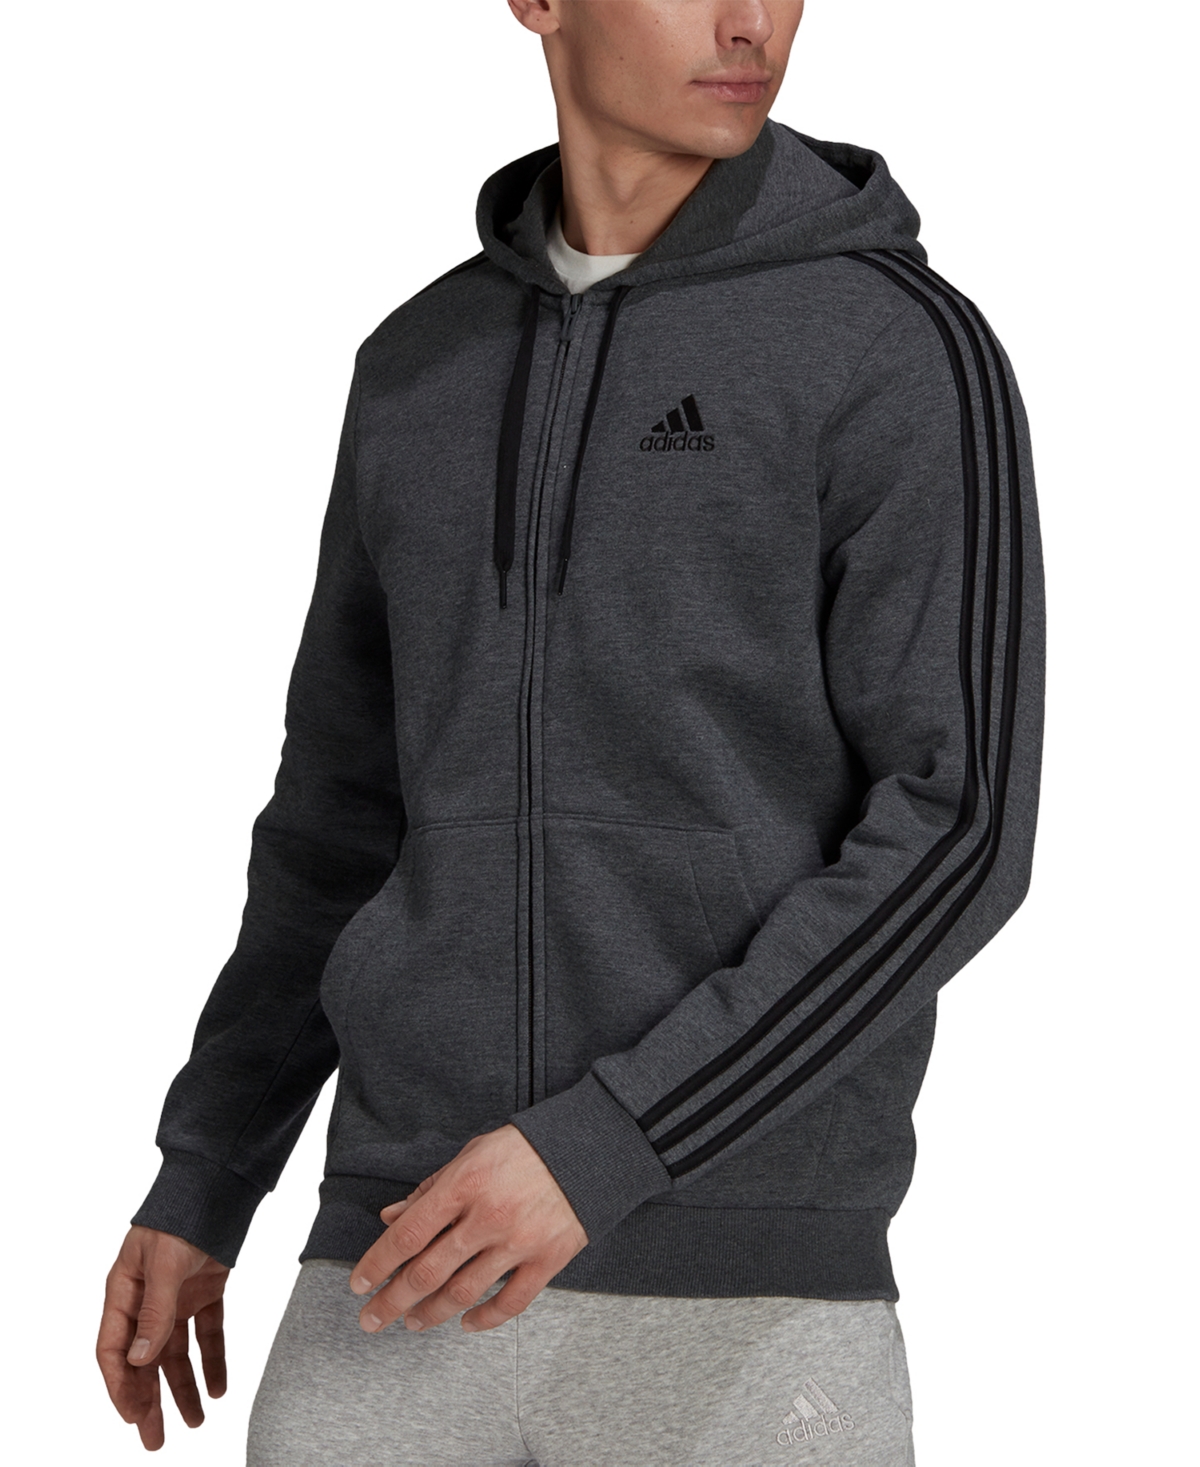 Adidas Originals Men's Essentials Full-zip Hoodie In Dark Grey Heather,black